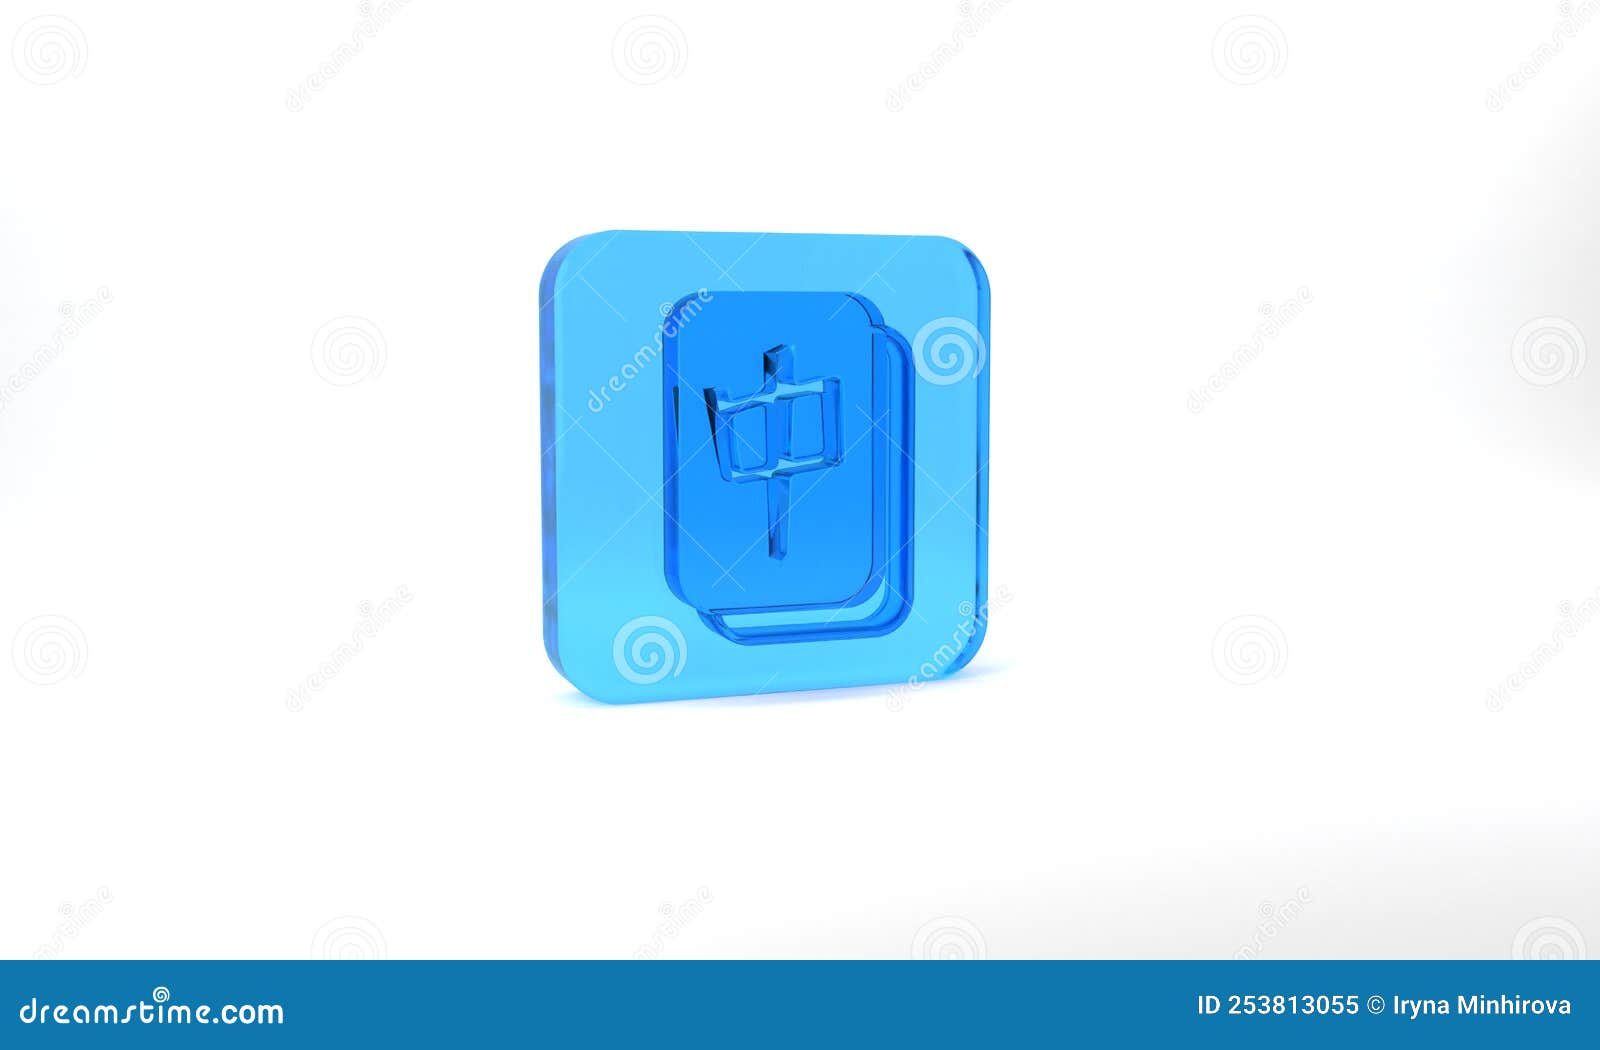 ícone De Peças De Mahjong Em Preto Isolado Em Fundo Branco. Emoji